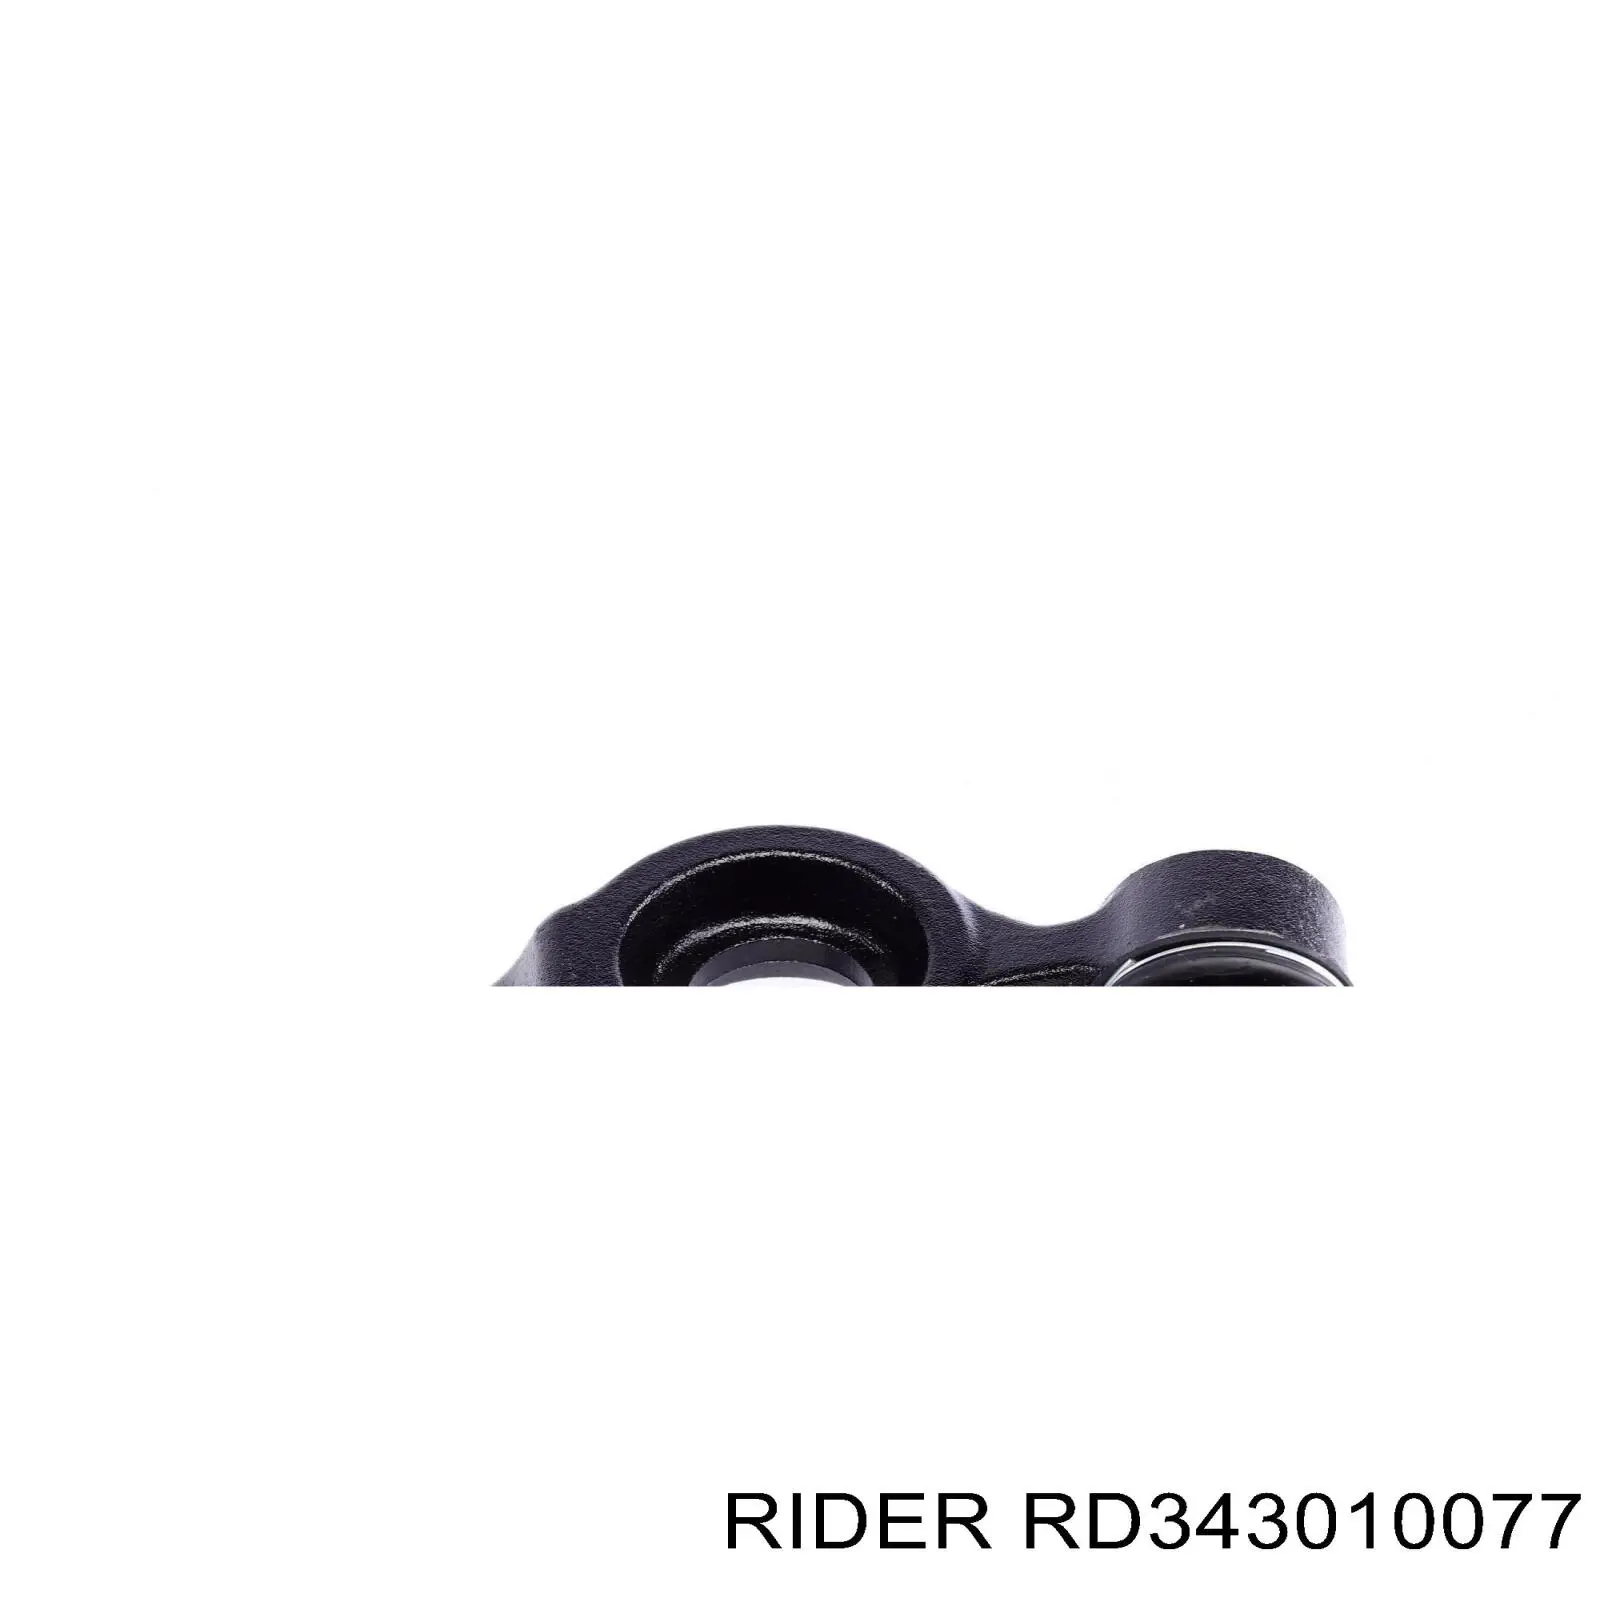 RD.343010077 Rider barra oscilante, suspensión de ruedas delantera, inferior izquierda